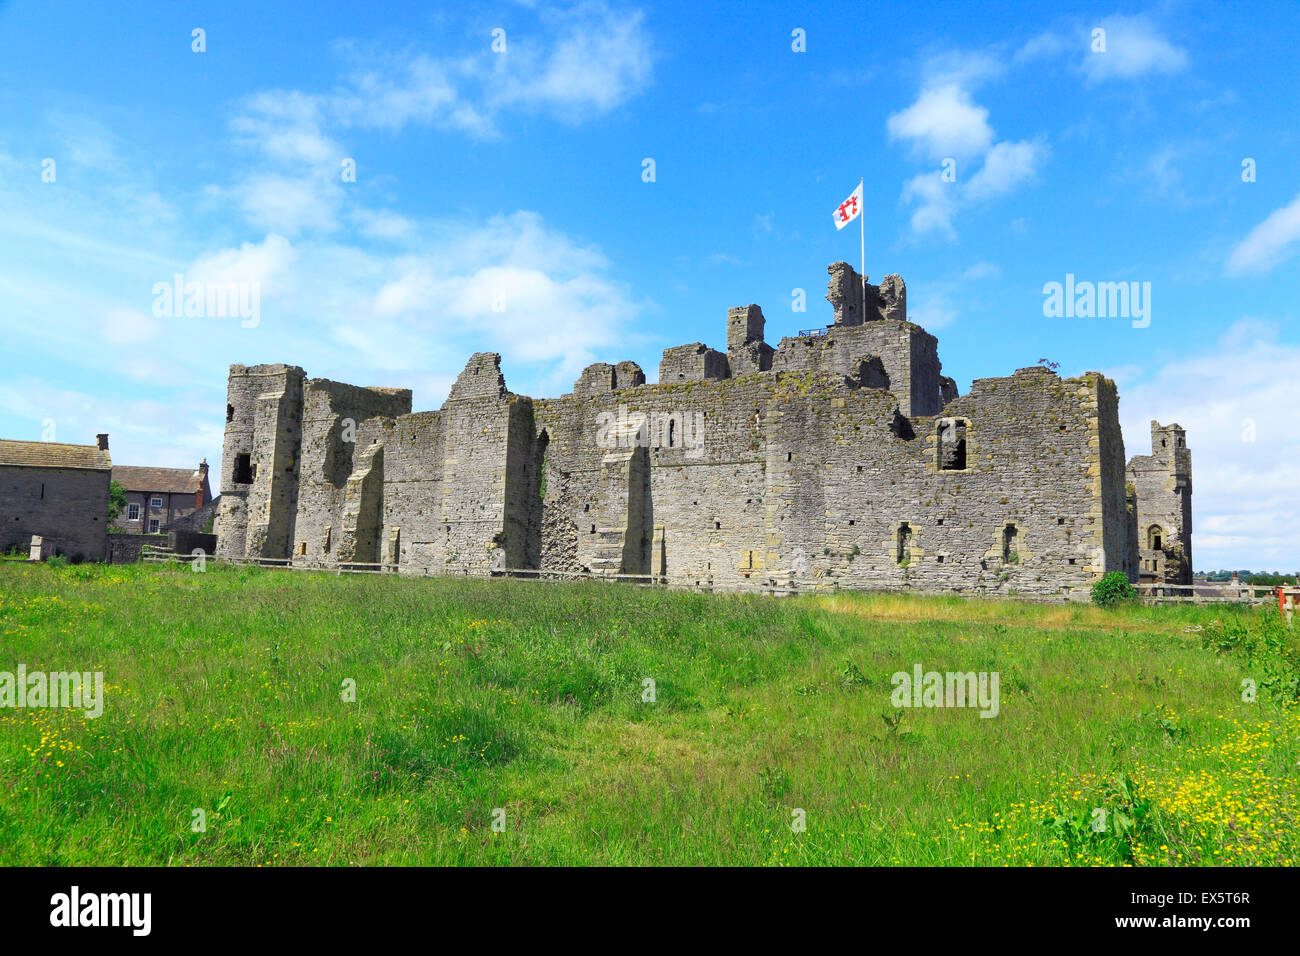 Château de Middleham, forteresse médiévale du roi Richard 3ème, Yorkshire Angleterre UK, Yorkshire Dales National Park Banque D'Images